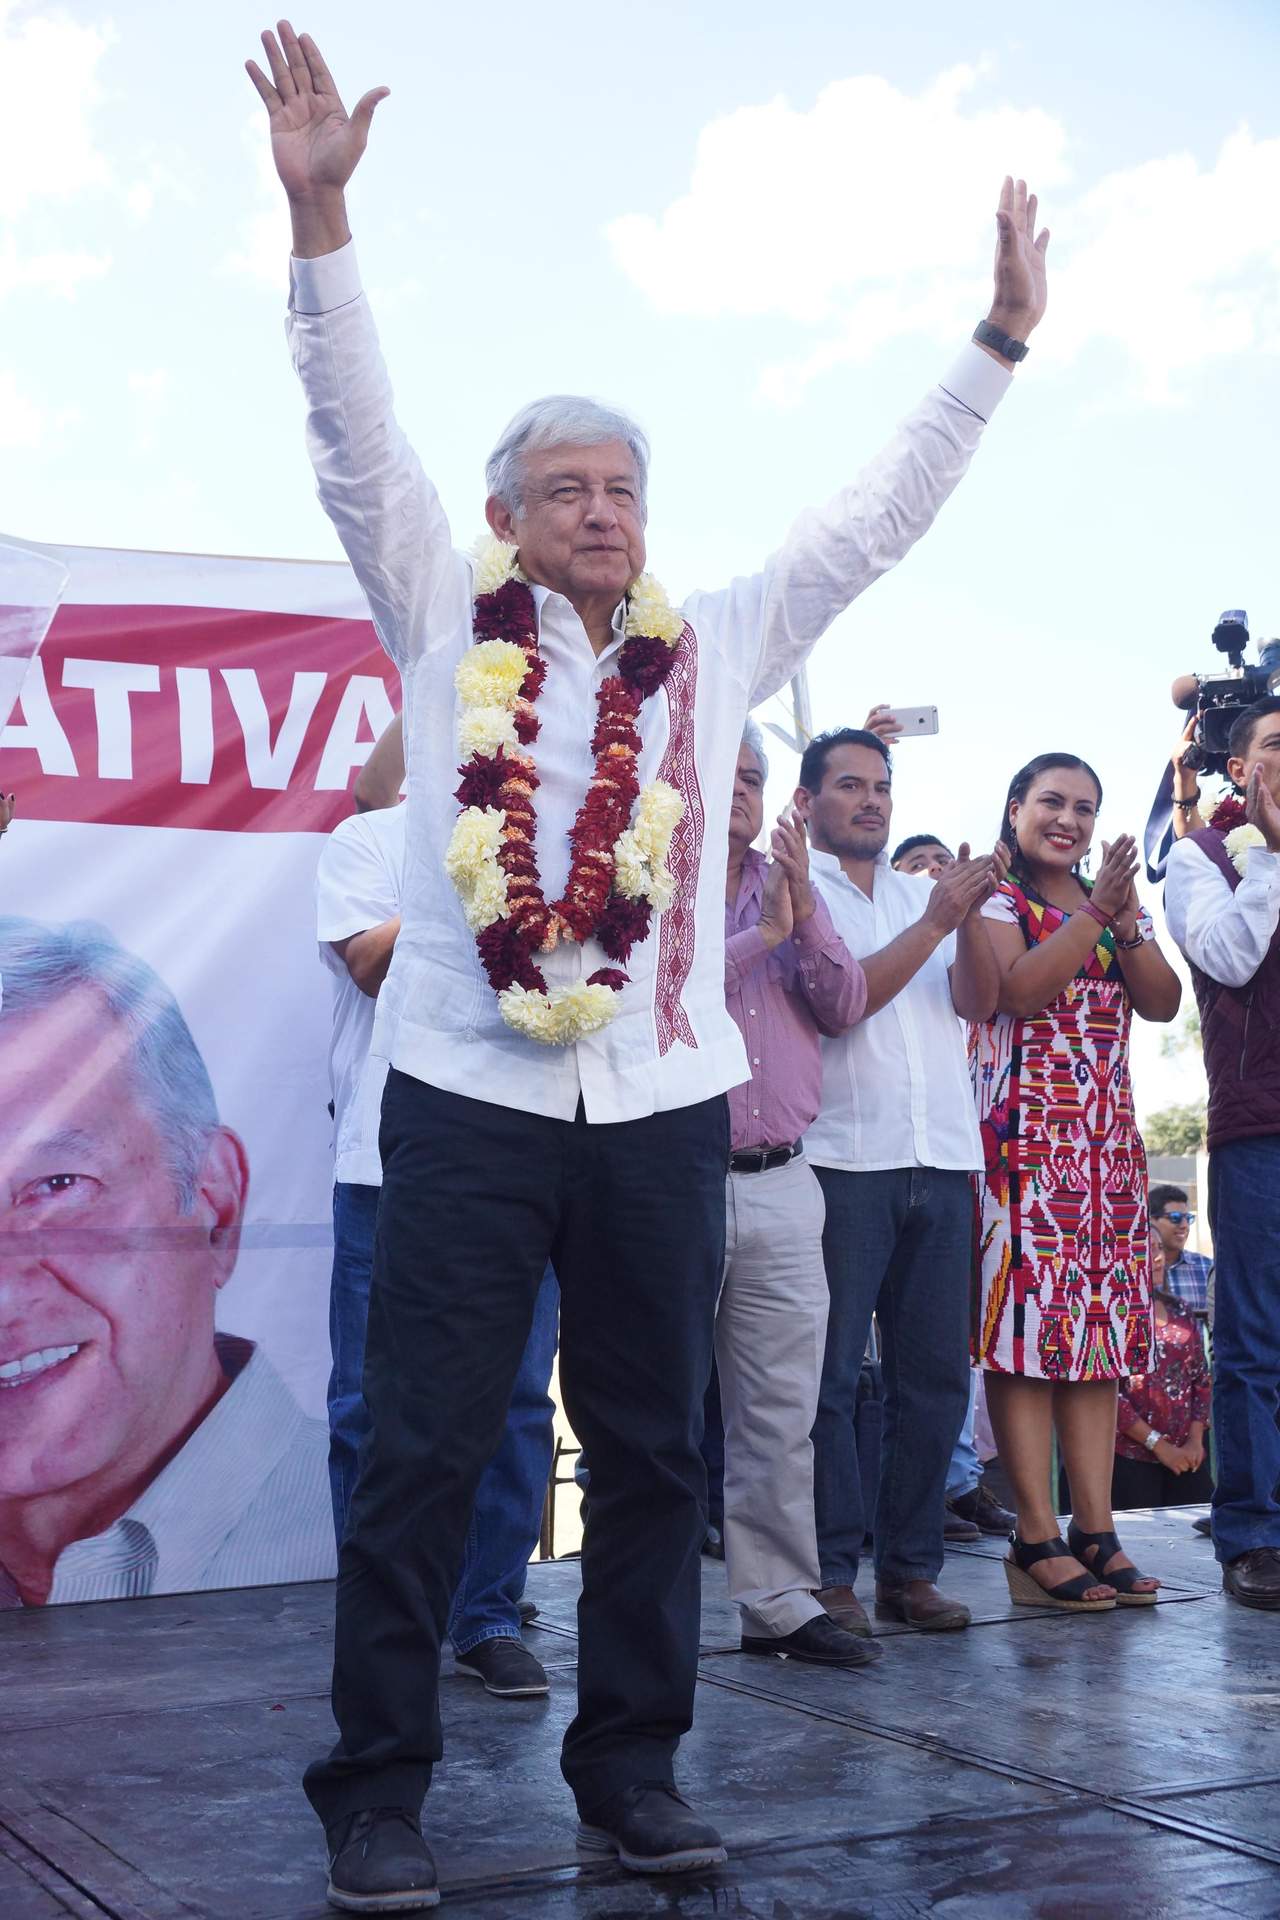 El precandidato presidencial Andrés Manuel López Obrador prometió, en esta entidad, donde nació, dar marcha atrás a la reforma educativa, como parte de un compromiso con maestros de todos los sectores, tanto del Sindicato como de la Coordinadora. (ARCHIVO)